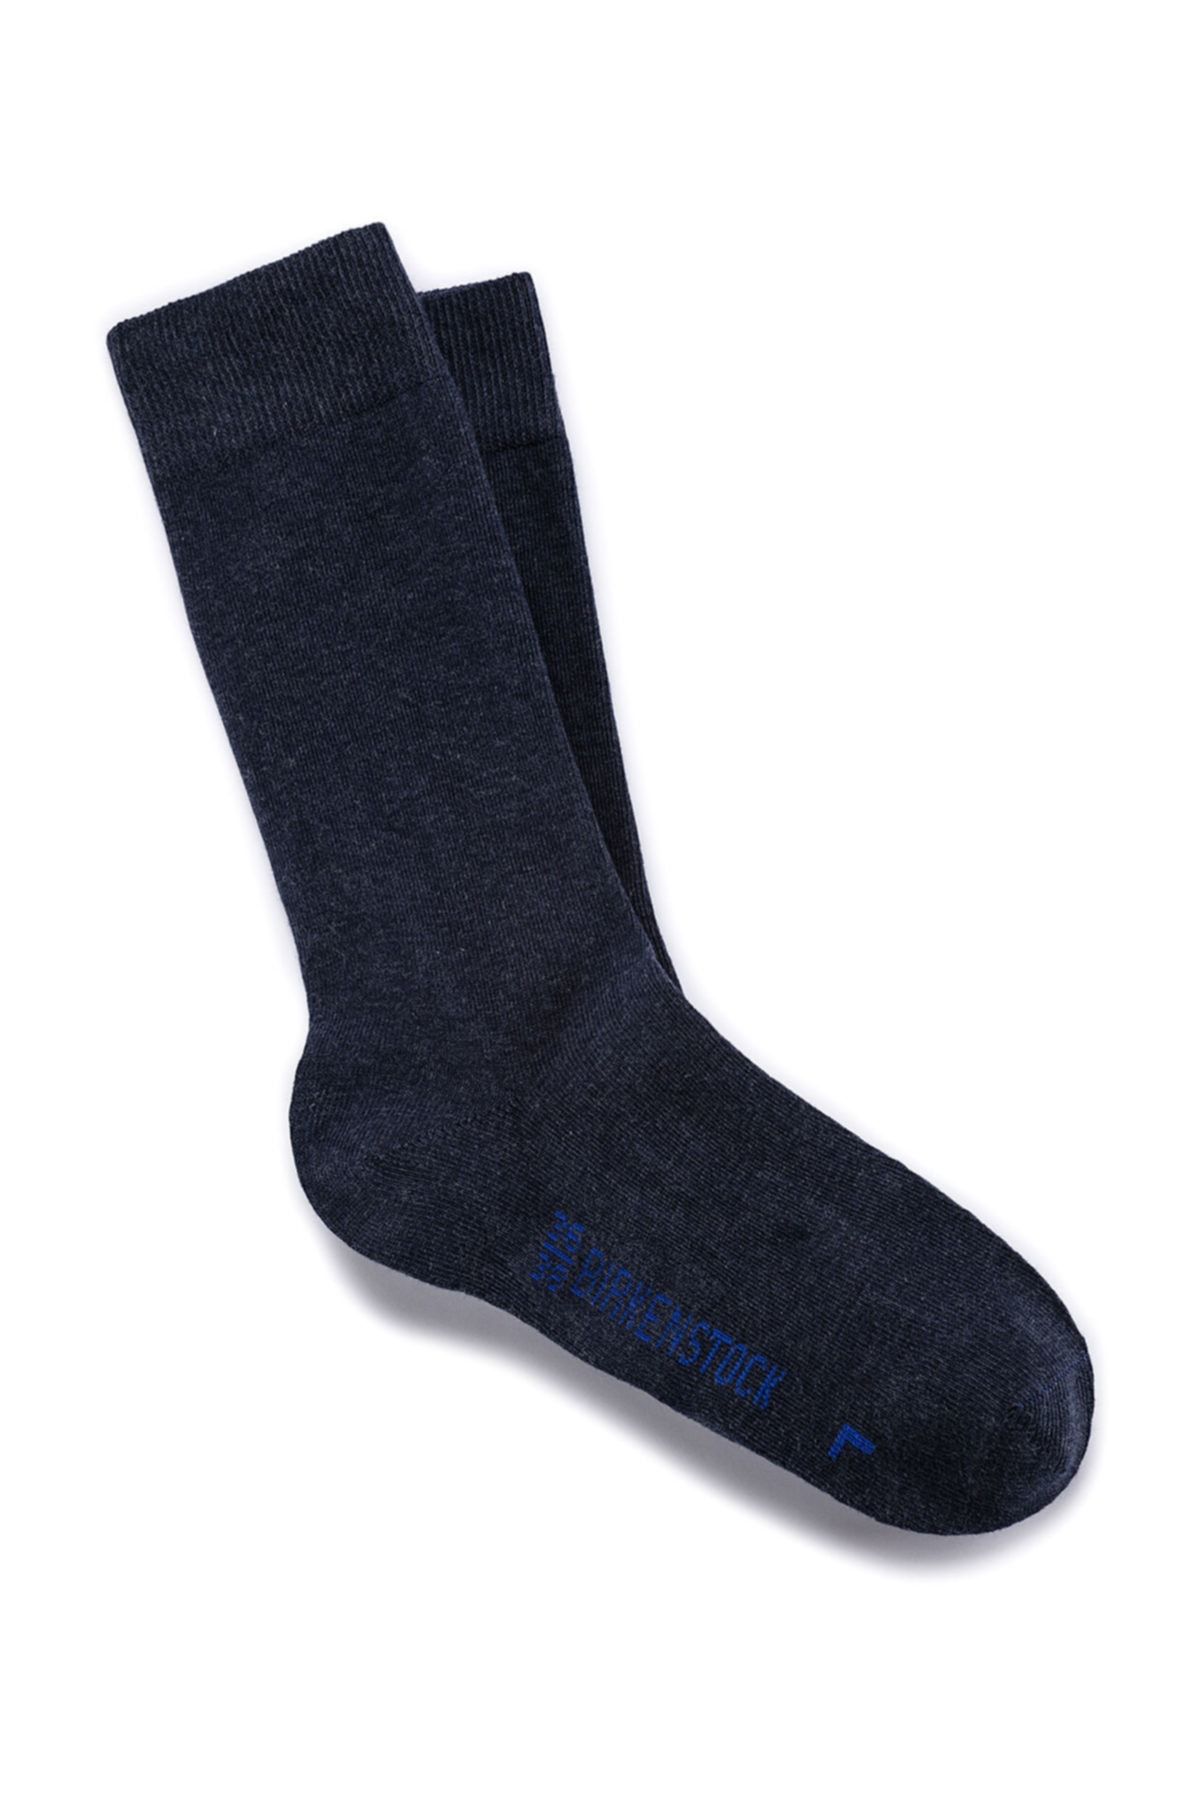 Birkenstock Cotton Sole Jean Mavi Erkek Çorap